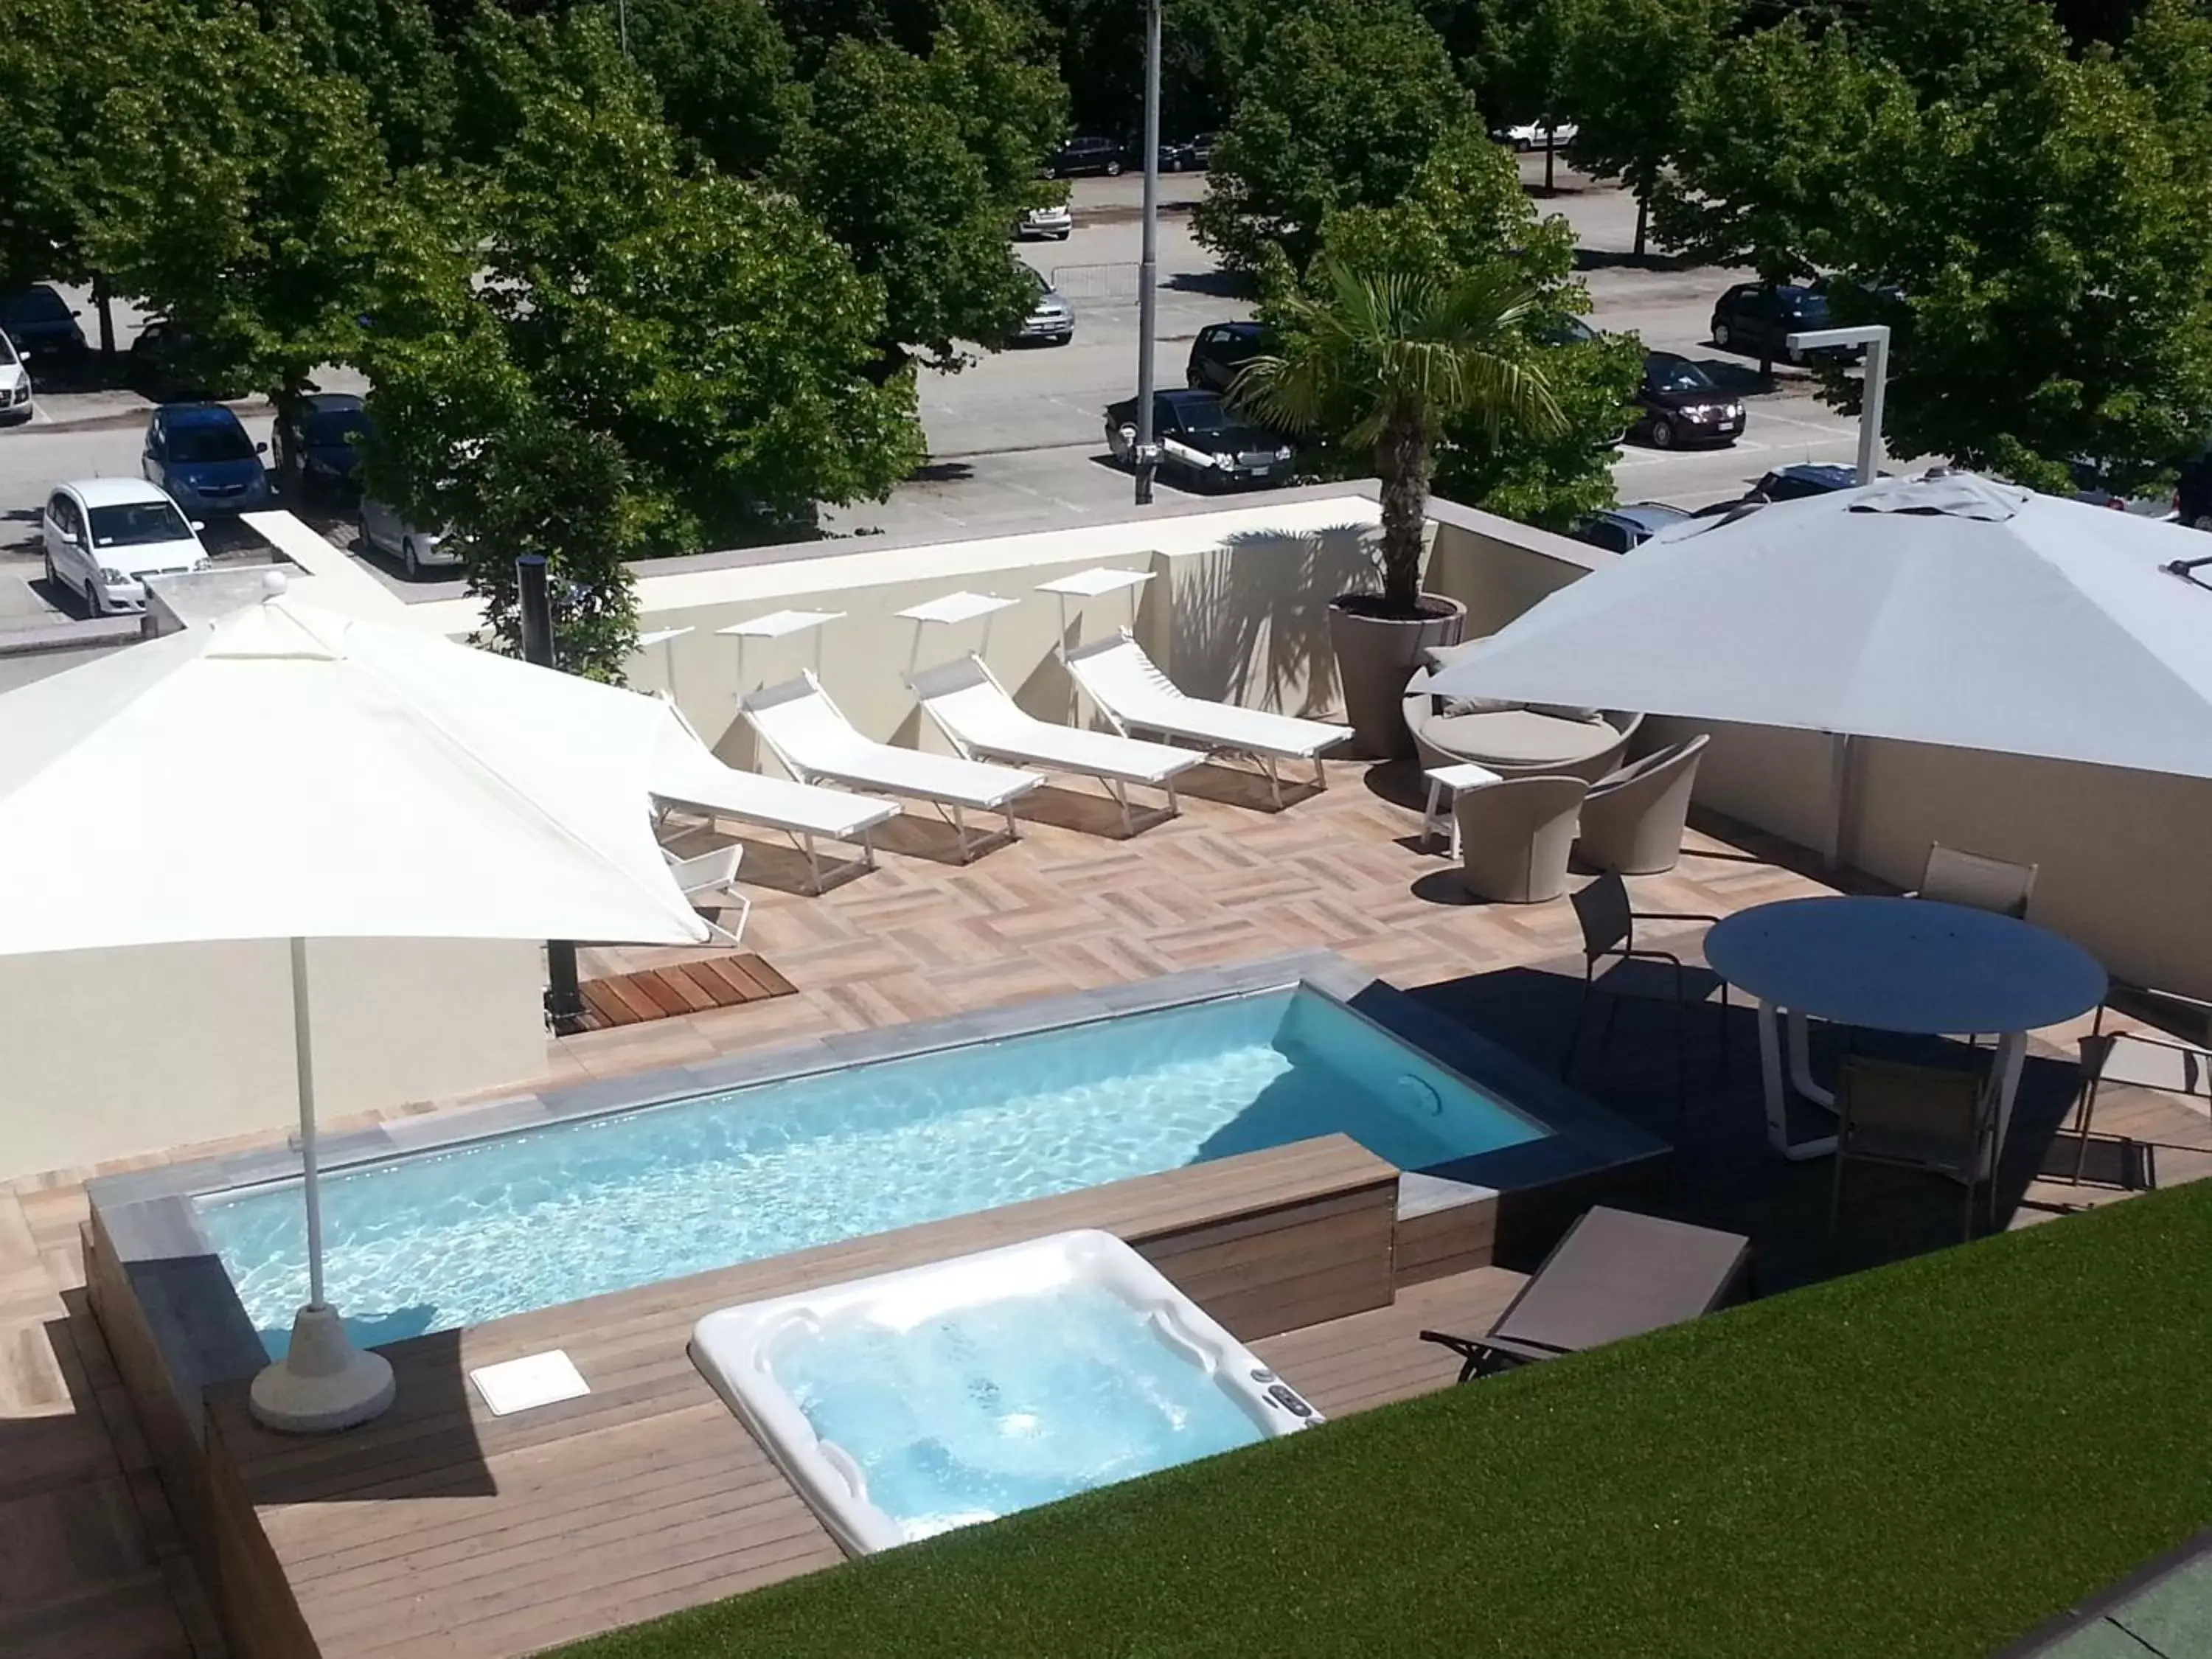 Day, Pool View in Palace Hotel "La CONCHIGLIA D' ORO"